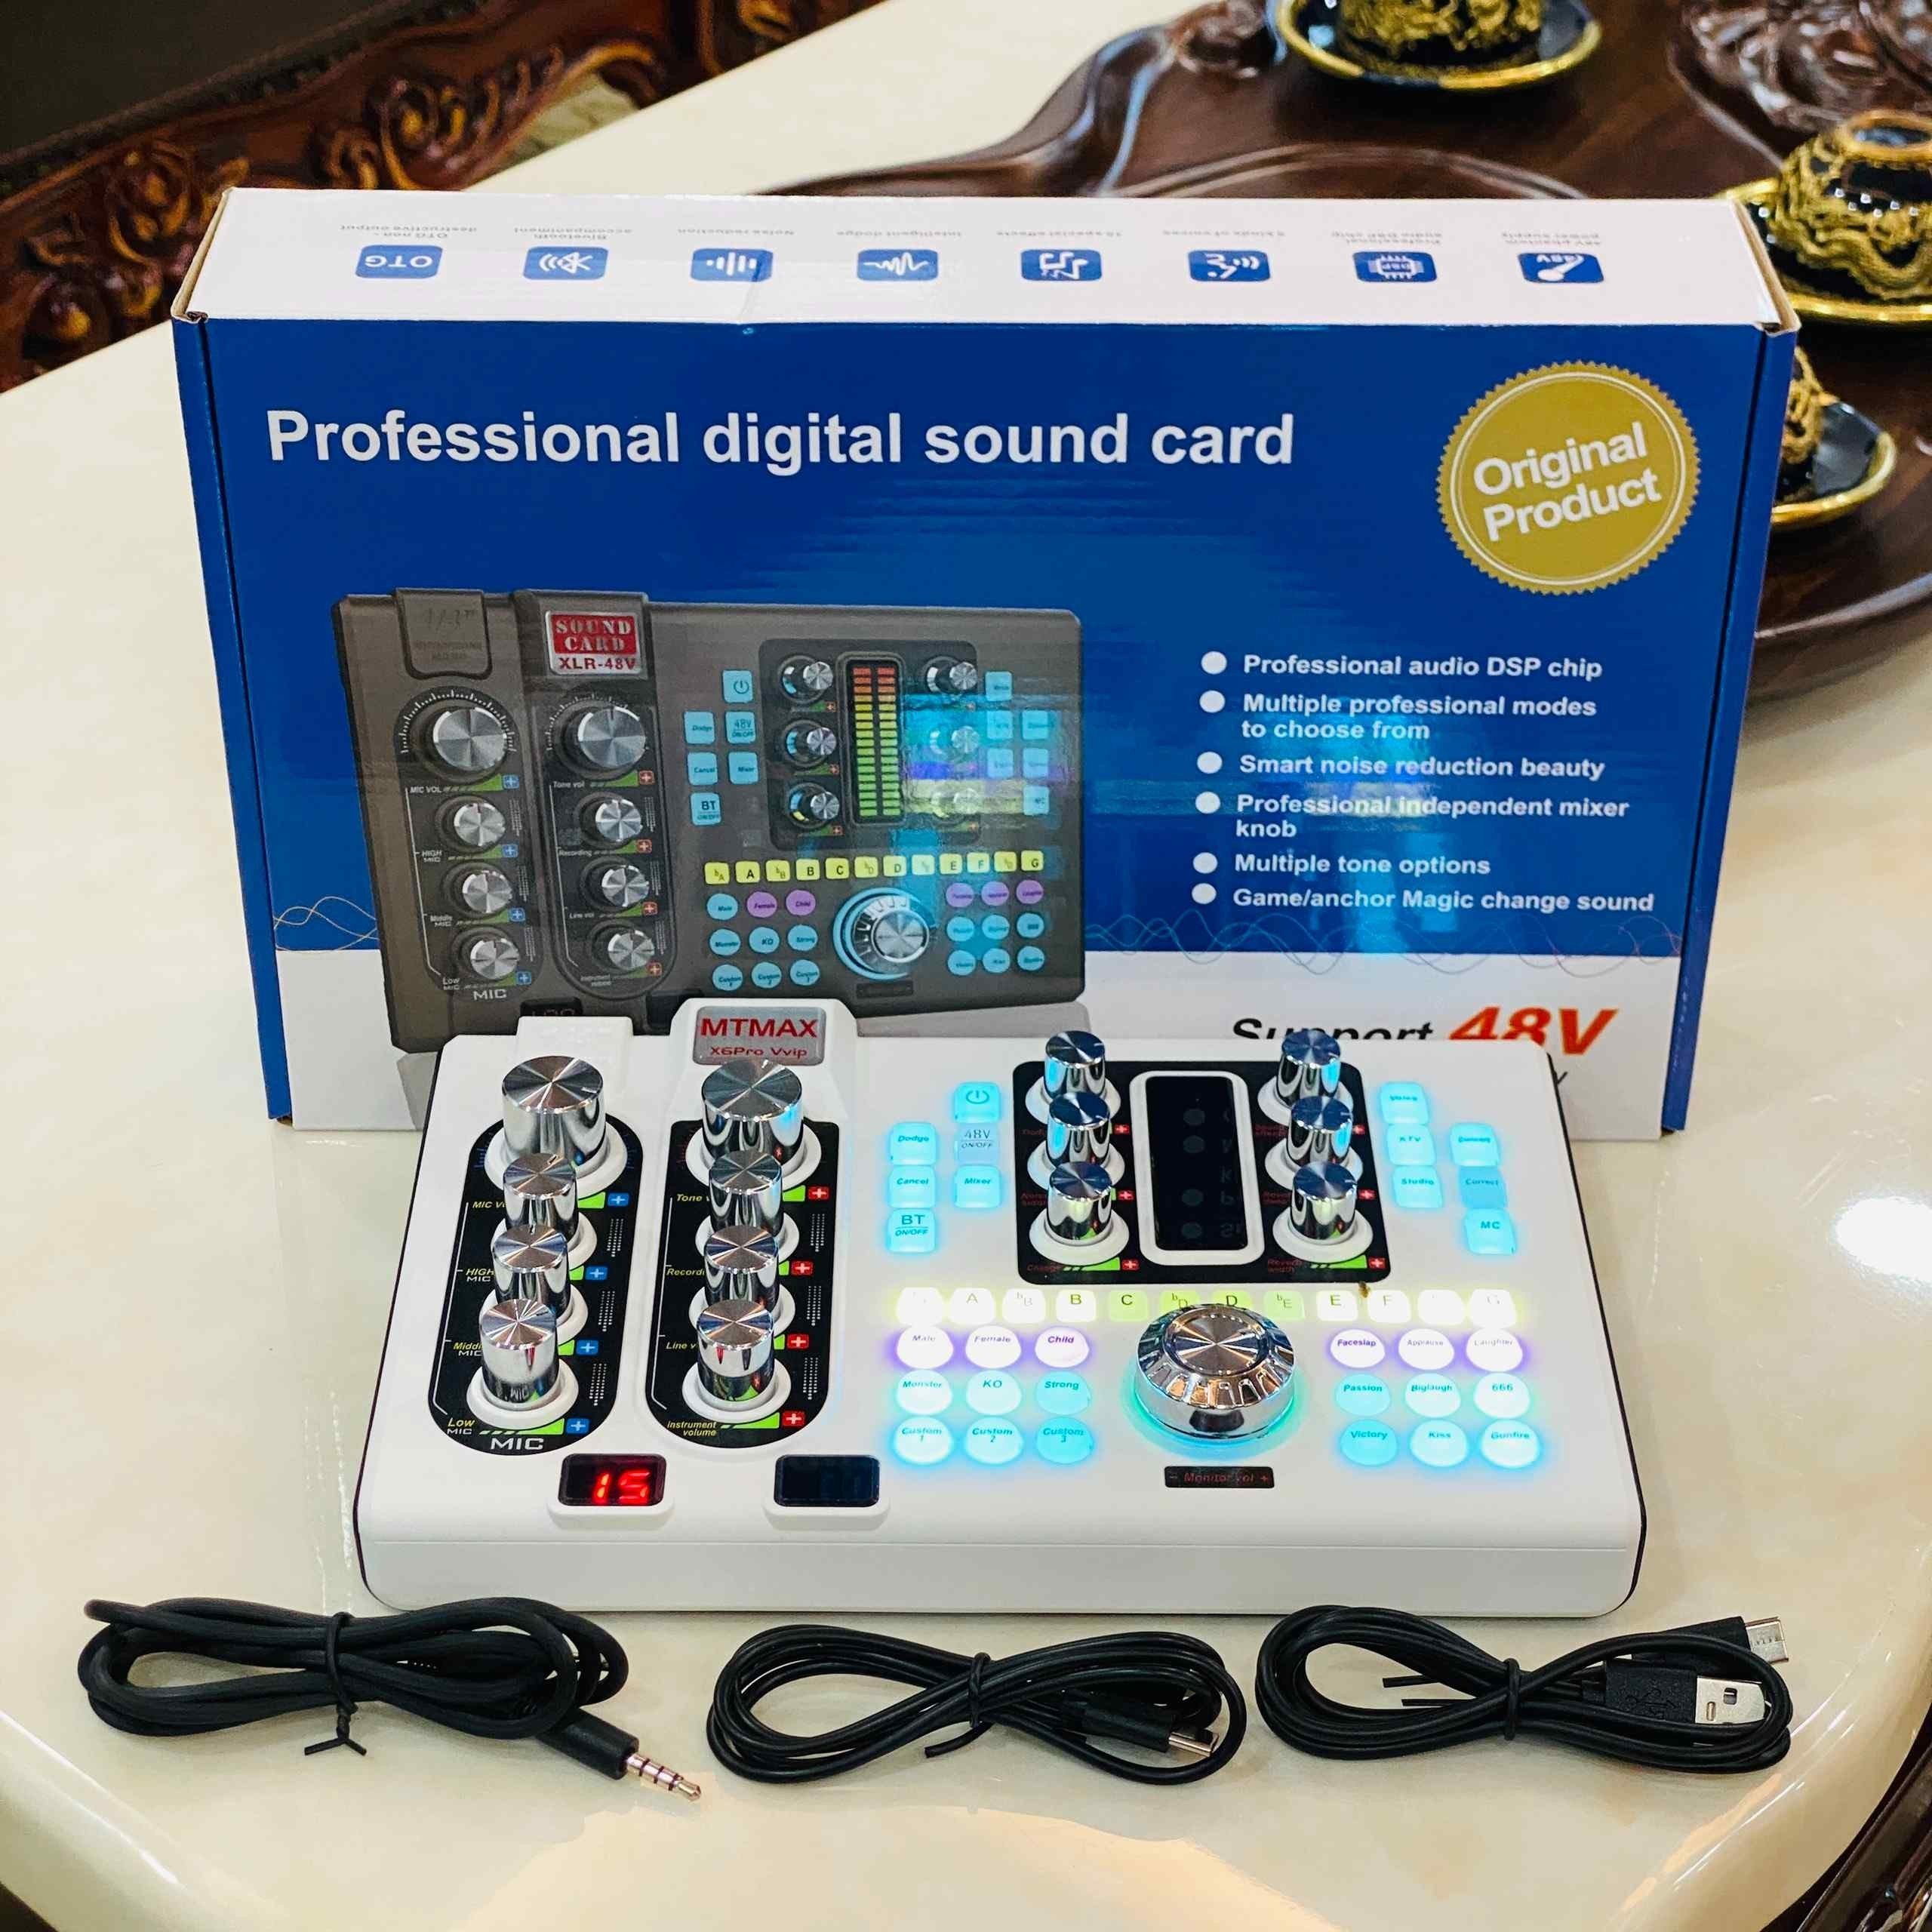 Soundcard MTMAX X6Pro - Thiết Bị Hỗ Trợ Thu Âm Và Phát Sóng Livestream Chất Lượng Cao, Tương Thích Với Nhiều Thiết Bị Âm Thanh